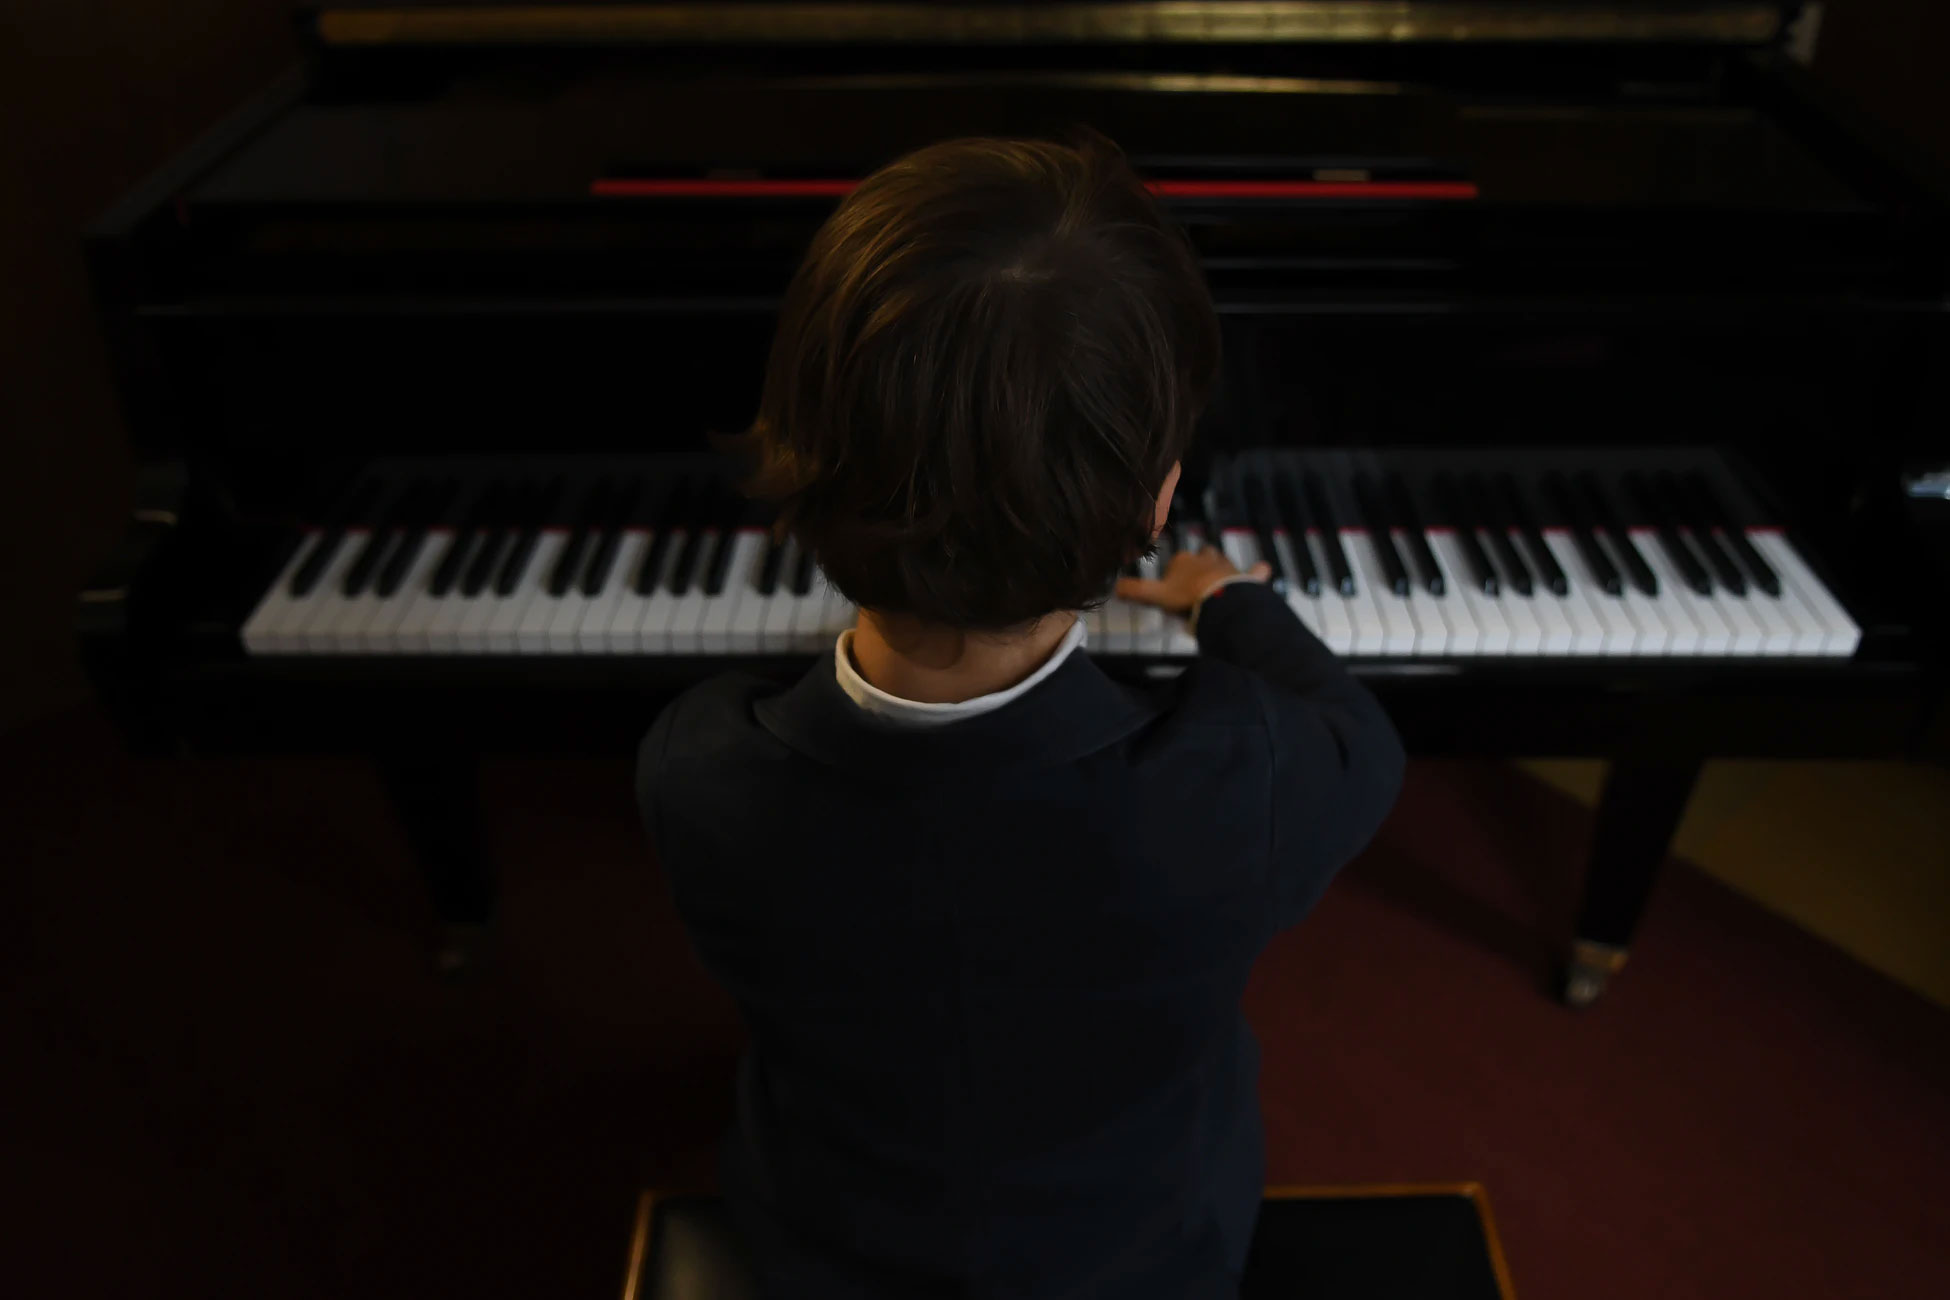 Kid sitting at a piano